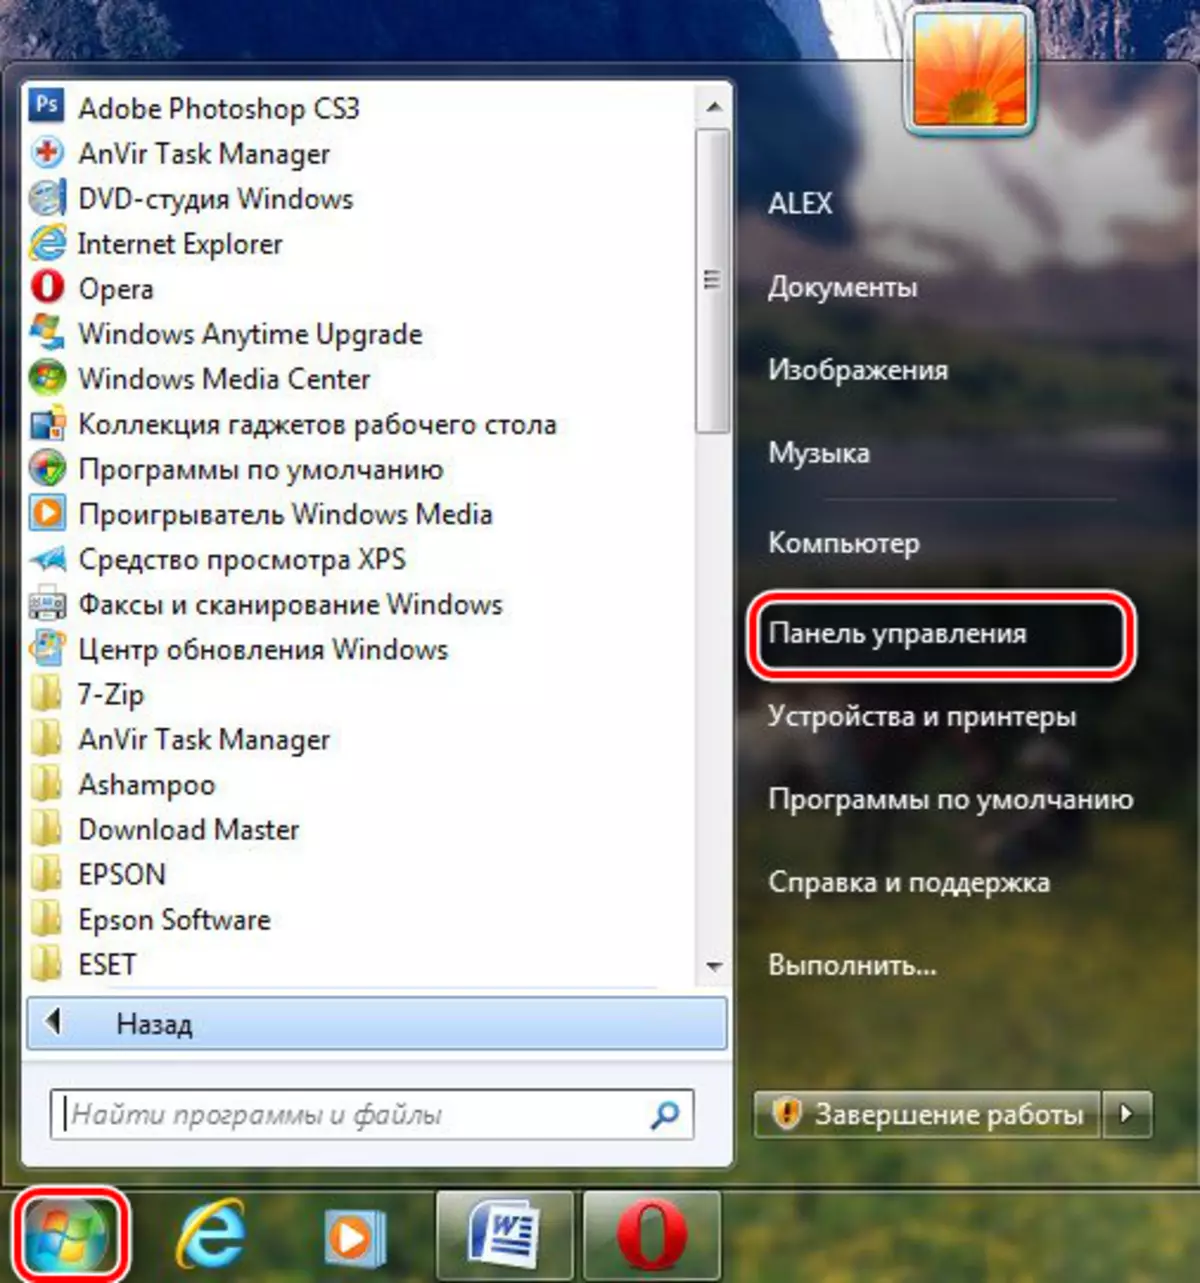 Paneli i Kontrollit të Windows 7 dhe më poshtë